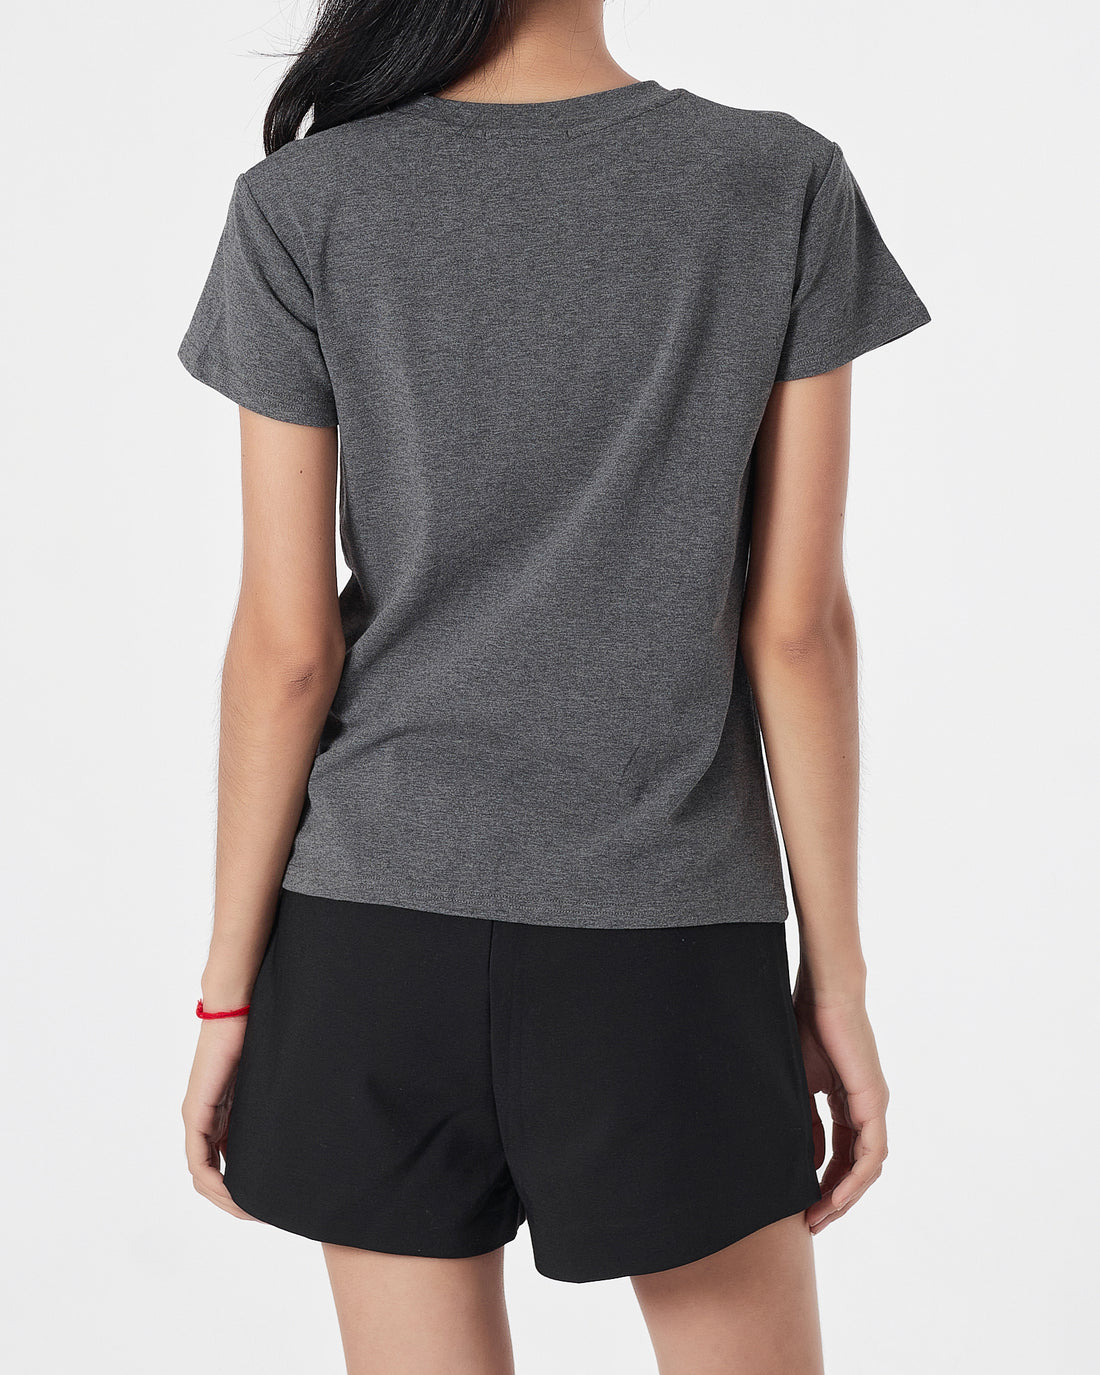 Plain Color Lady Grey T-Shirt 11.90